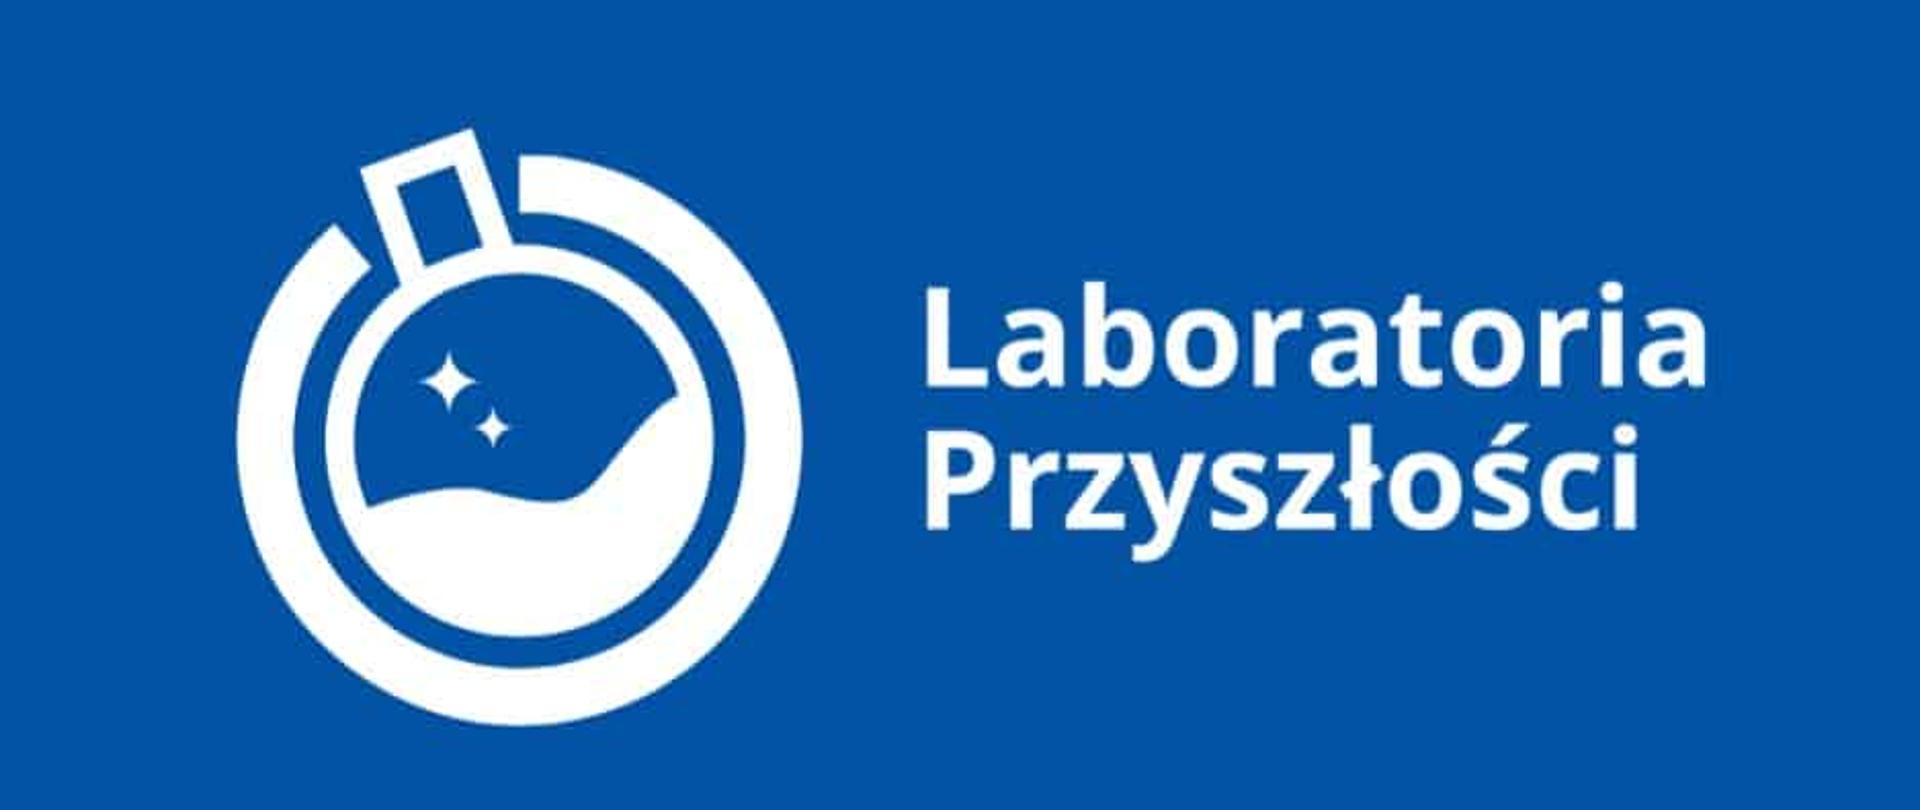 Laboratoria przyszłości - Szkoła Podstawowa w Radomyśli - Portal gov.pl